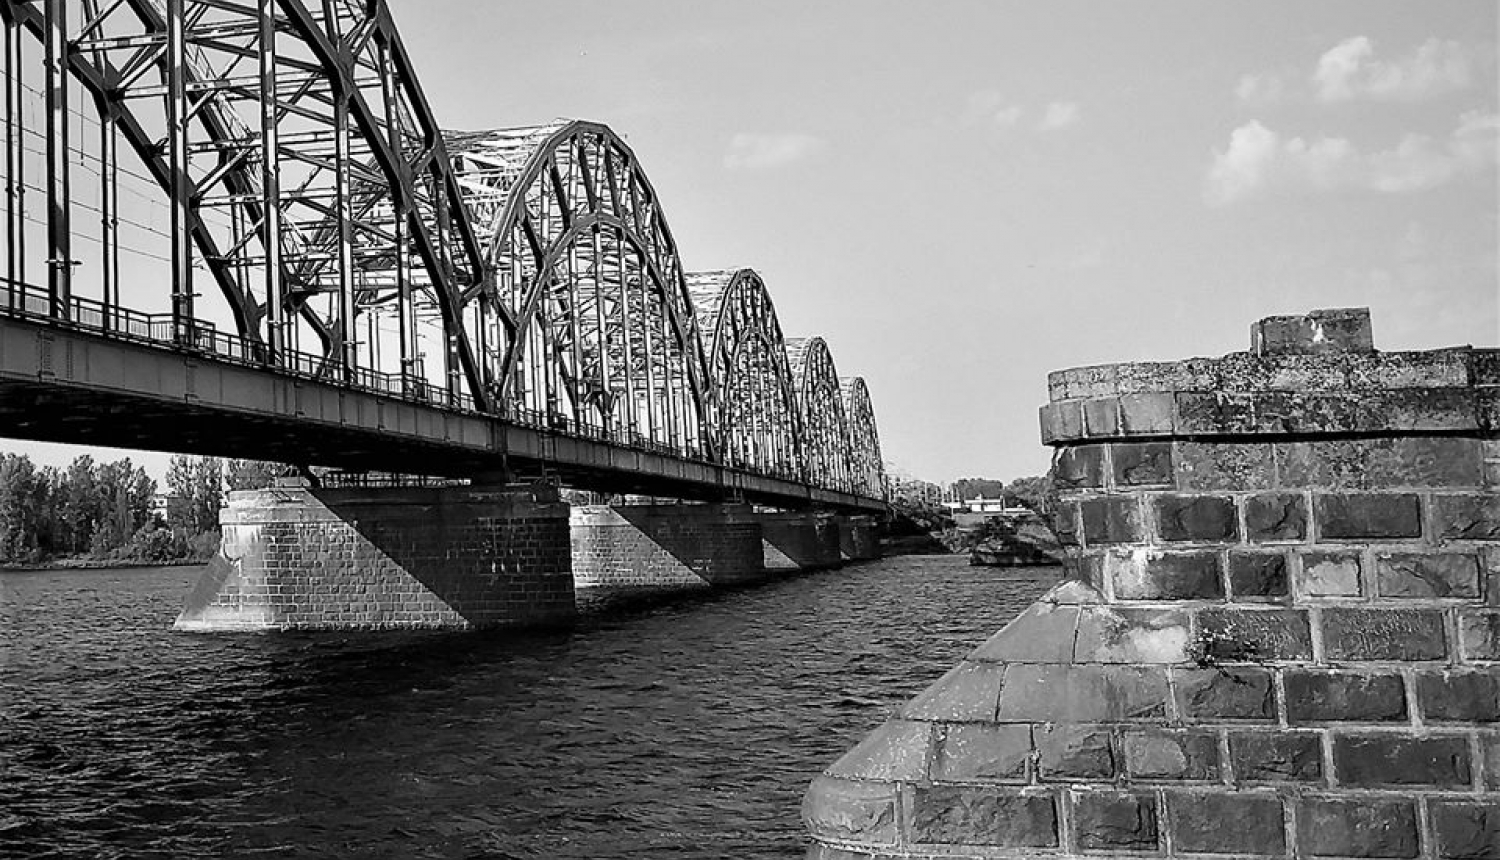 Dzelzceļa tilts pār Daugavu. Tilts no metāla konstrukcijas. Melnbalta fototgrāfija